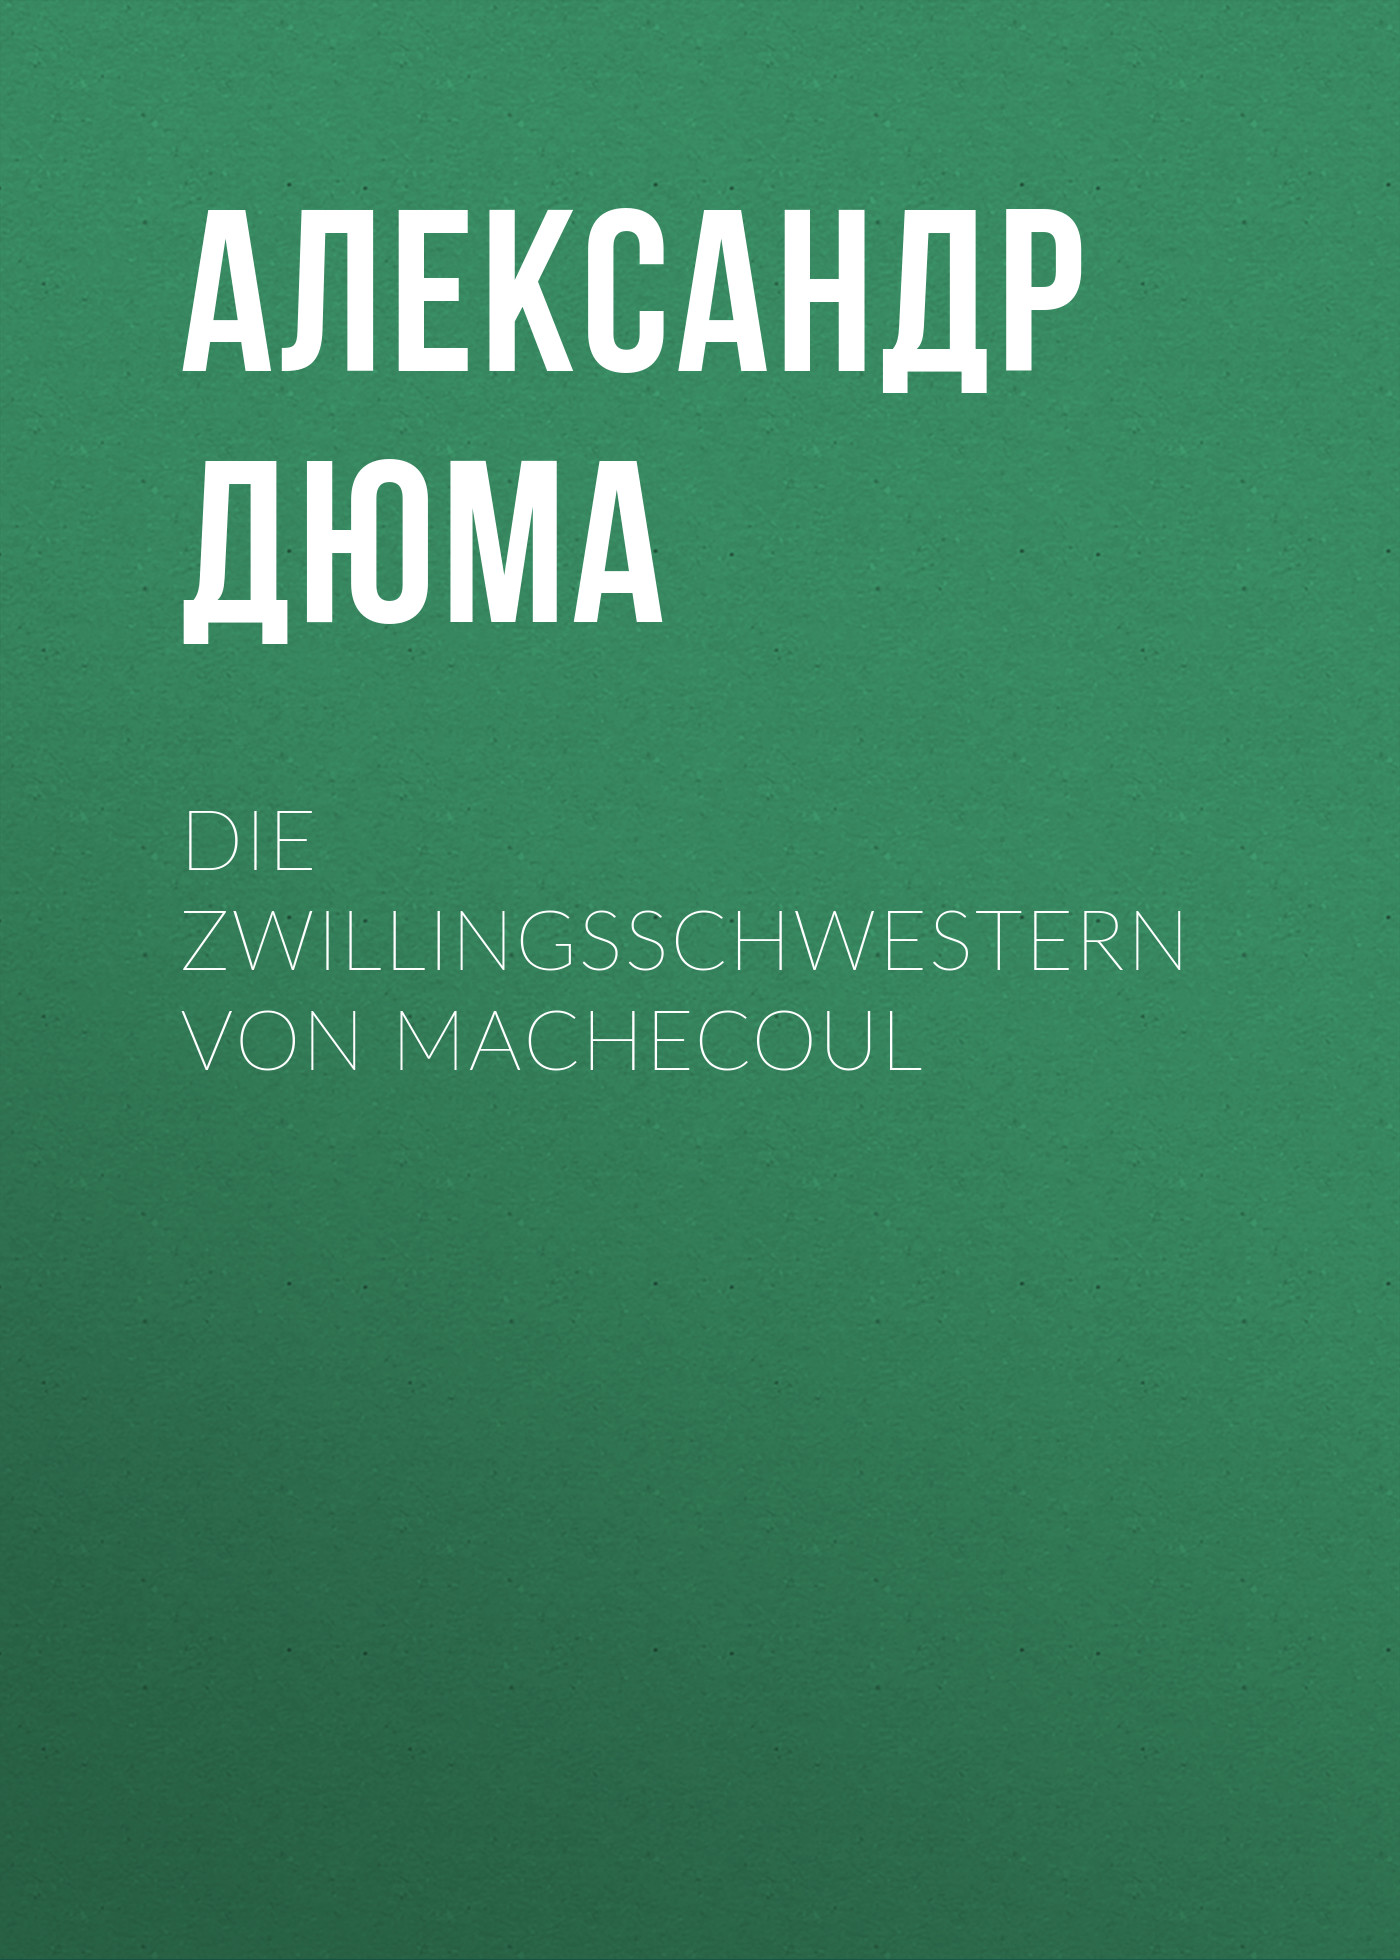 Книга Die Zwillingsschwestern von Machecoul из серии , созданная Alexandre Dumas der Ältere, может относится к жанру Зарубежная классика. Стоимость электронной книги Die Zwillingsschwestern von Machecoul с идентификатором 48632596 составляет 0 руб.